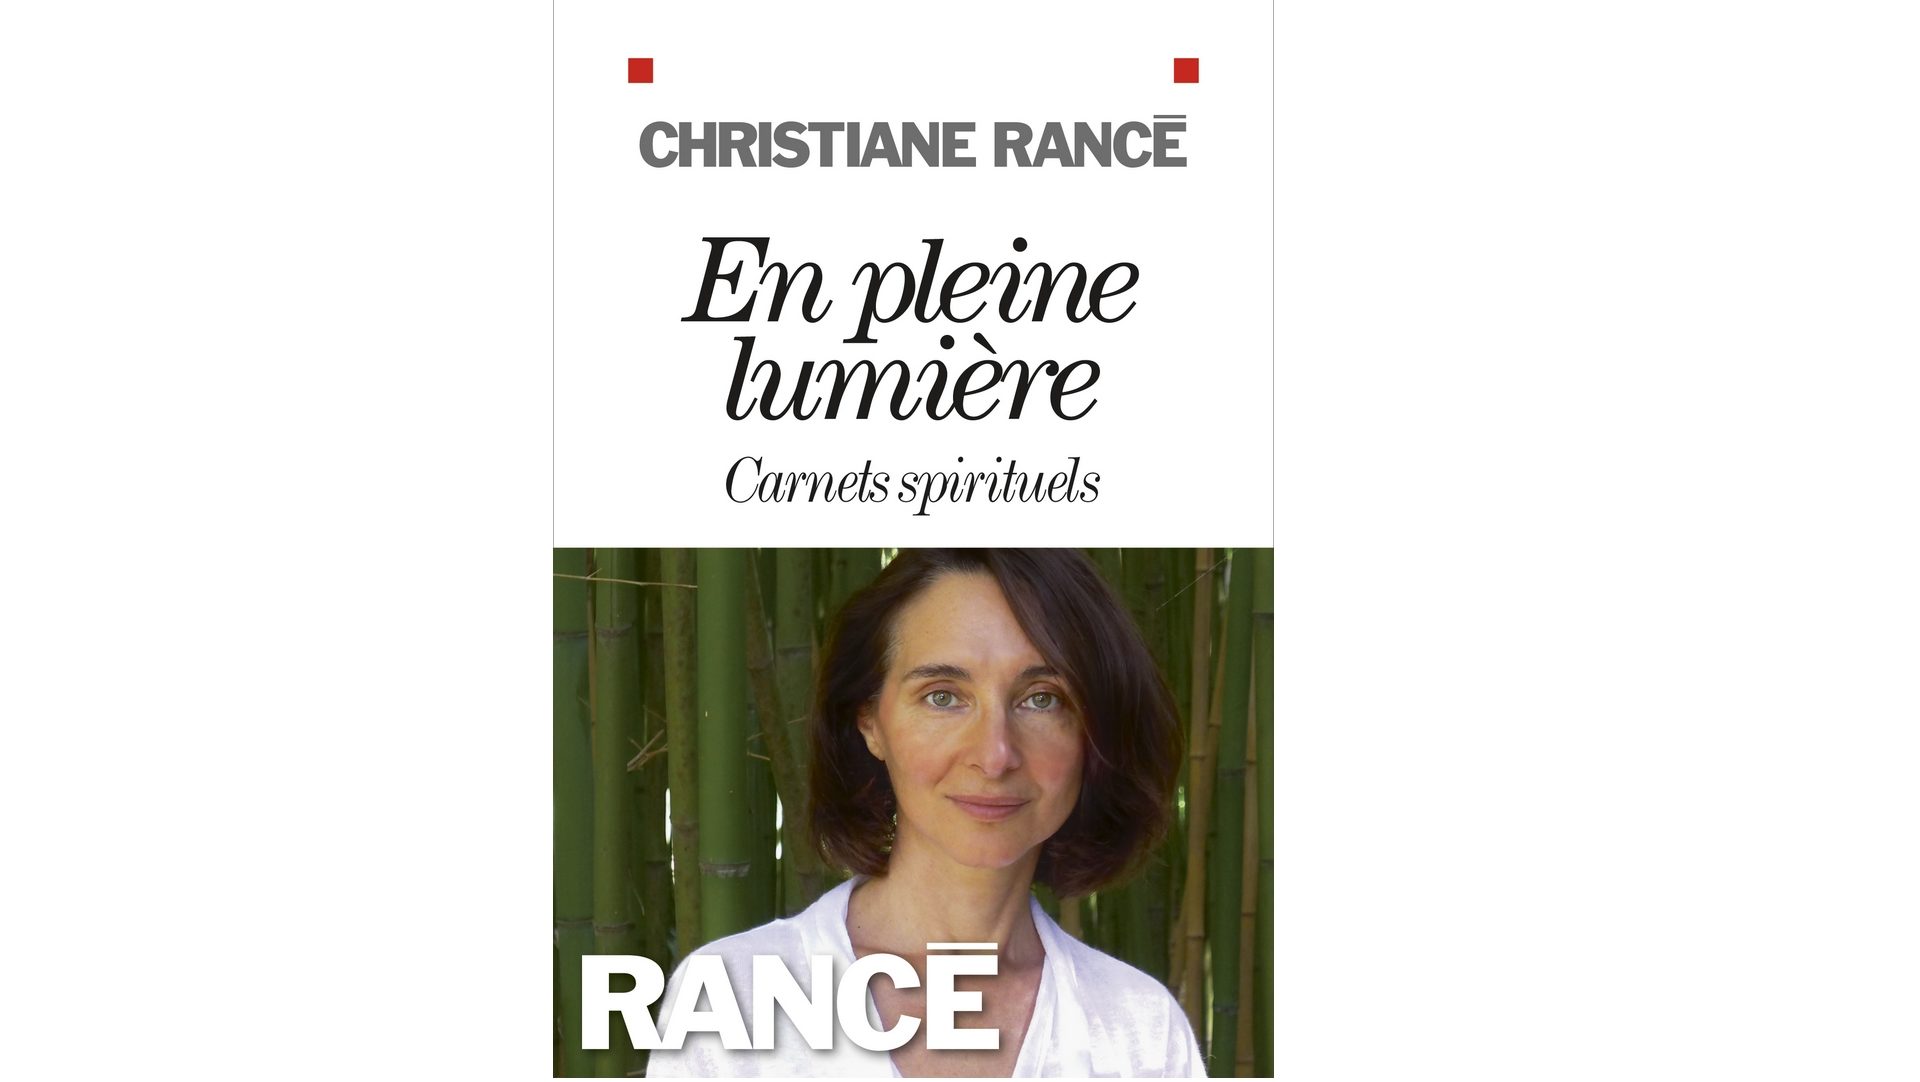 Christiane Rancé a obtenu le Prix humanisme chrétien 2017 